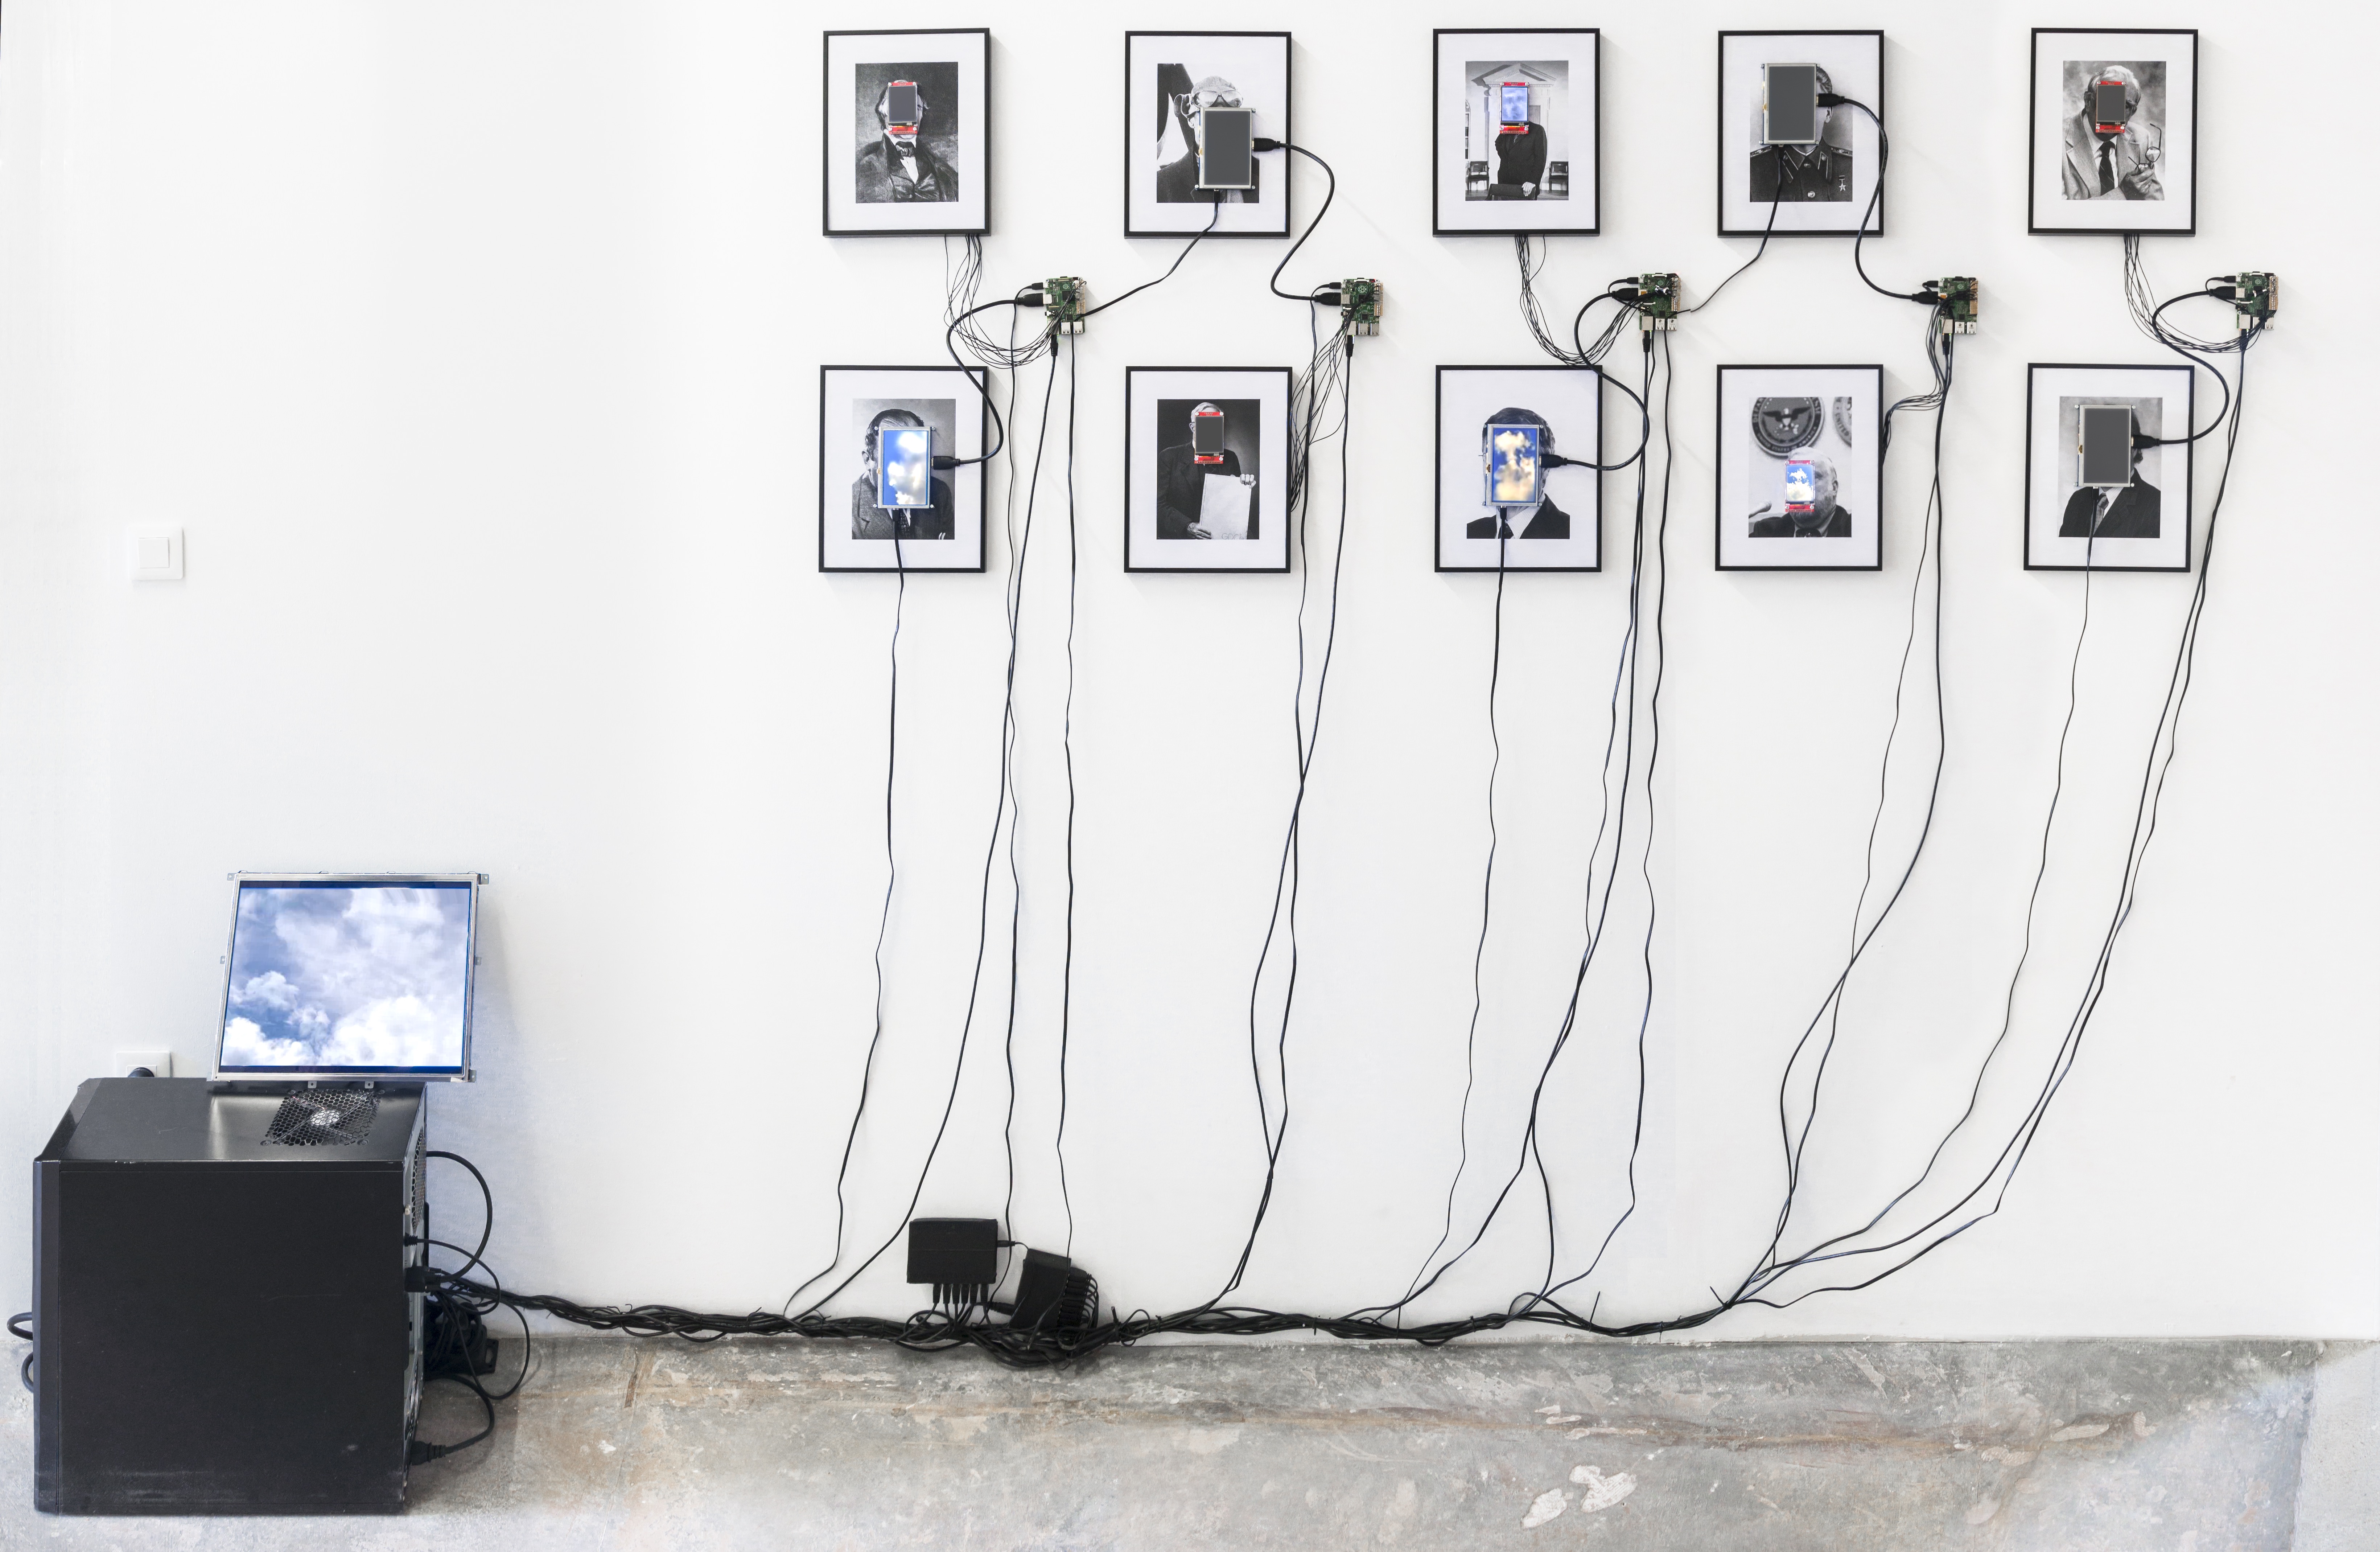 Das Foto zeigt 10 eingerahmte Portraits auf deren Gesichter kleine Monitore angebracht sind. Diese sind durch Kabel mit einem Computer verbunden.